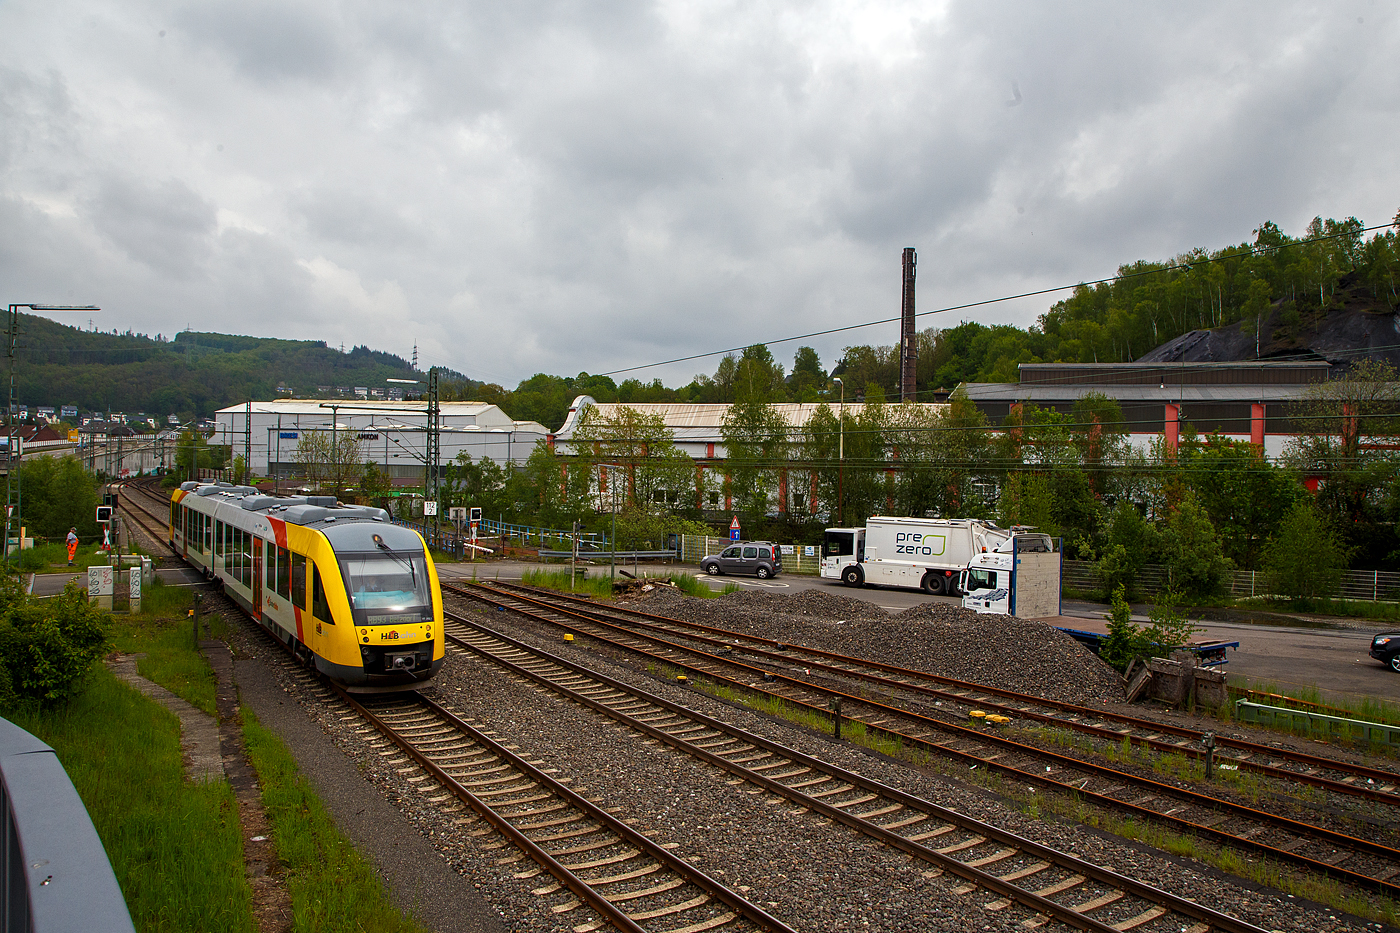 Der Dieseltriebzug VT 262 (95 80 0648 162-5 D-HEB / 95 80 0648 662-4 D-HEB) ein Alstom Coradia LINT 41 der HLB (Hessische Landesbahn), ex Vectus VT 262, erreicht am 11.05.2023, als RB 93 Rothaarbahn (Bad Berleburg - Kreuztal - Siegen Hbf - Betzdorf), bald den Bahnhof Niederschelden. 

Hier überquert er gerade den Bü 343 (km 112,183) und ist somit schon in Niederschelderhütte (PLP). Kurz dahinter verläuft die Sieg die auch Landesgrenze zwischen NRW (Nordrhein-Westfalen) und RLP (Rheinland-Pfalz) ist und die Orte Niederschelden (zu Siegen) und Niederschelderhütte (zu Mudersbach) trennt. So müsste der Bahnhof Niederschelden (heißt bei der DB so), müsste aber eigentlich Niederschelderhütte heißen, wo er liegt.

Im Hintergrund noch erhaltene Hallen der ehemaligen Charlottenhütte, sie war eine bedeutende Eisenhütte mit zwei koksbetriebenen Hochöfen.
